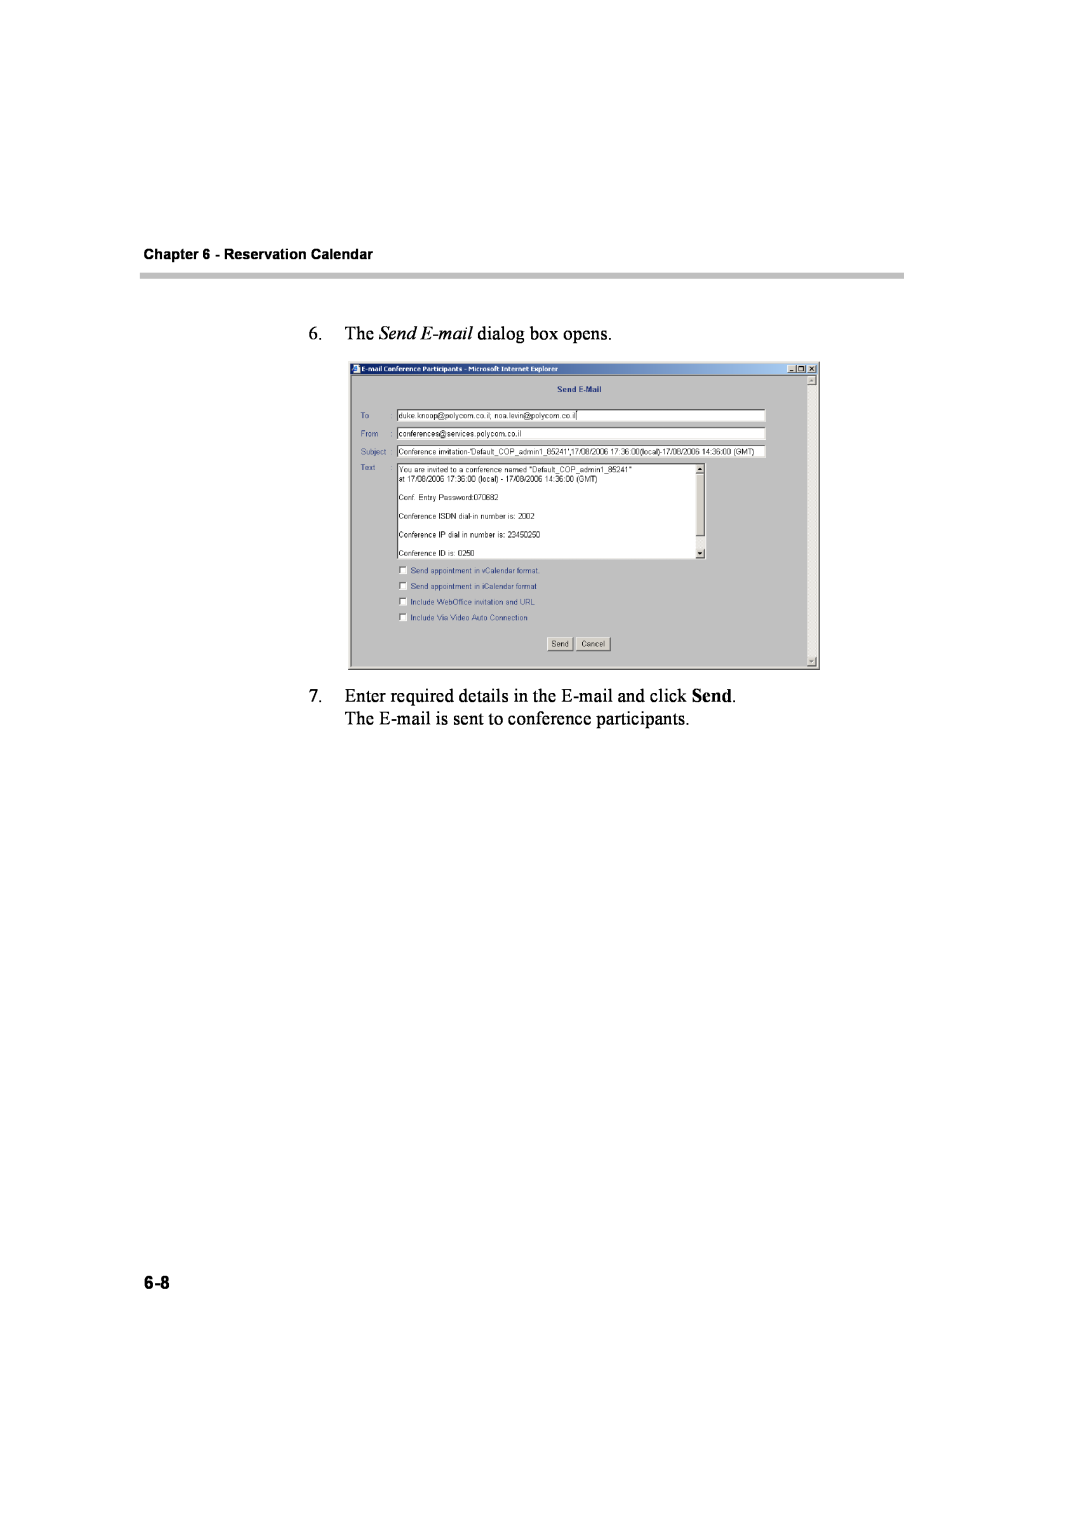 Polycom 8 manual The Send E-mail dialog box opens, Reservation Calendar 